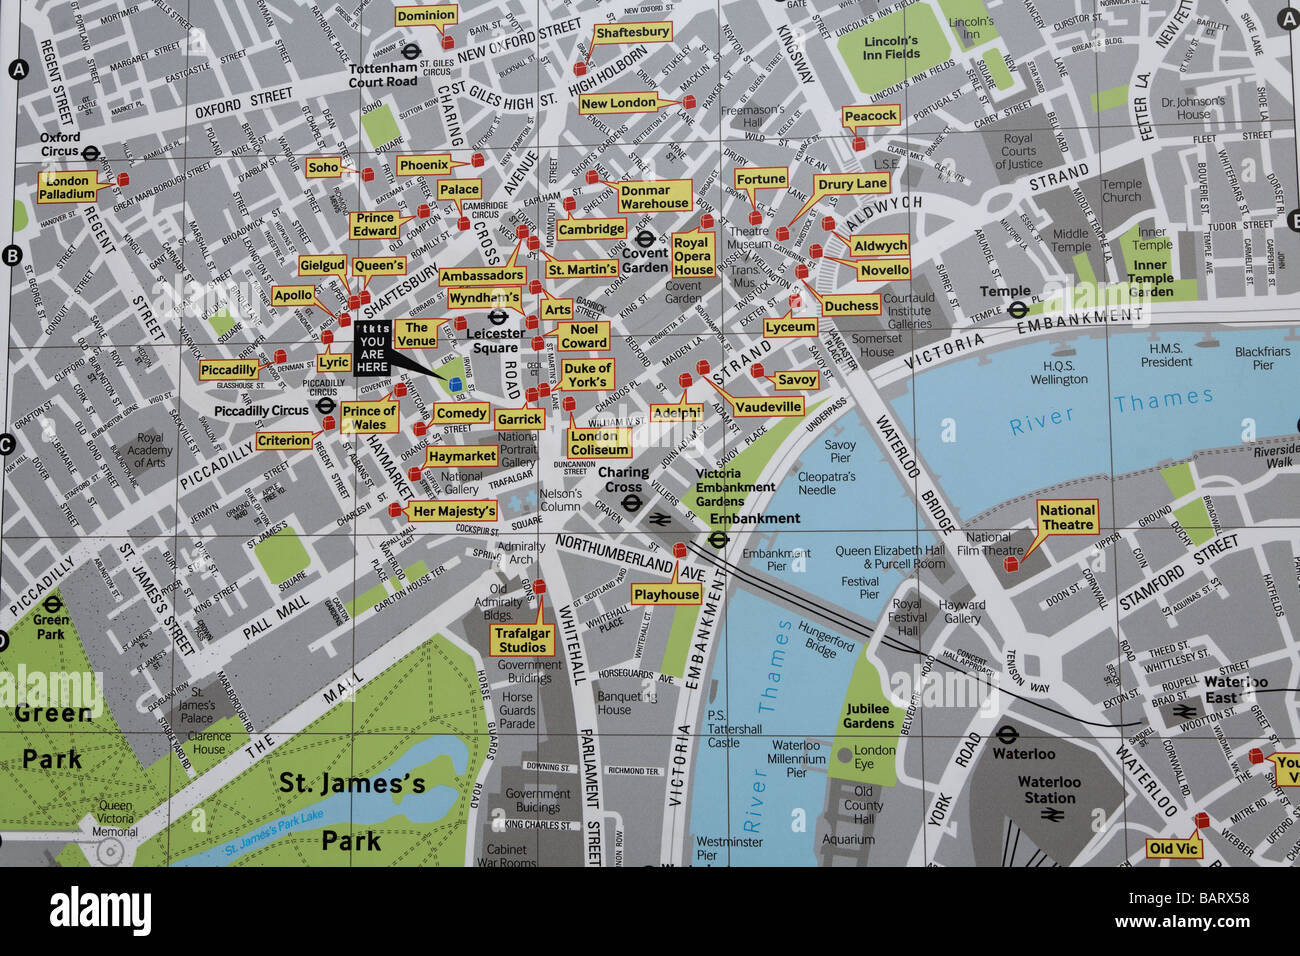 Carte des théâtres du West End, Londres, Angleterre Banque D'Images